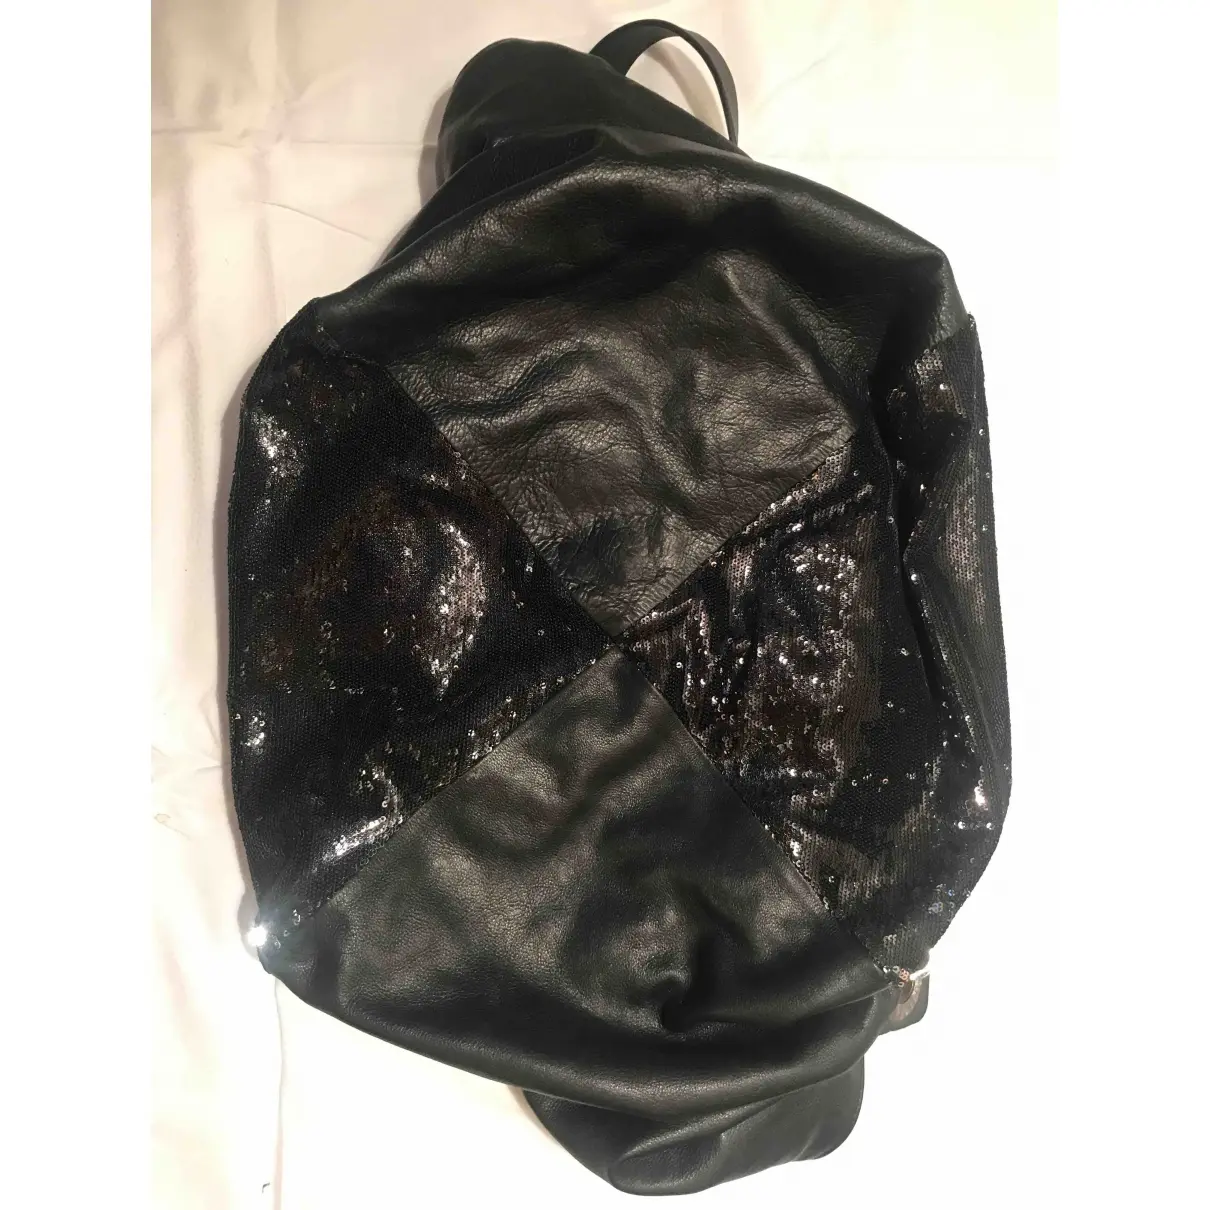 Buy Pauric Sweeney Leather handbag online